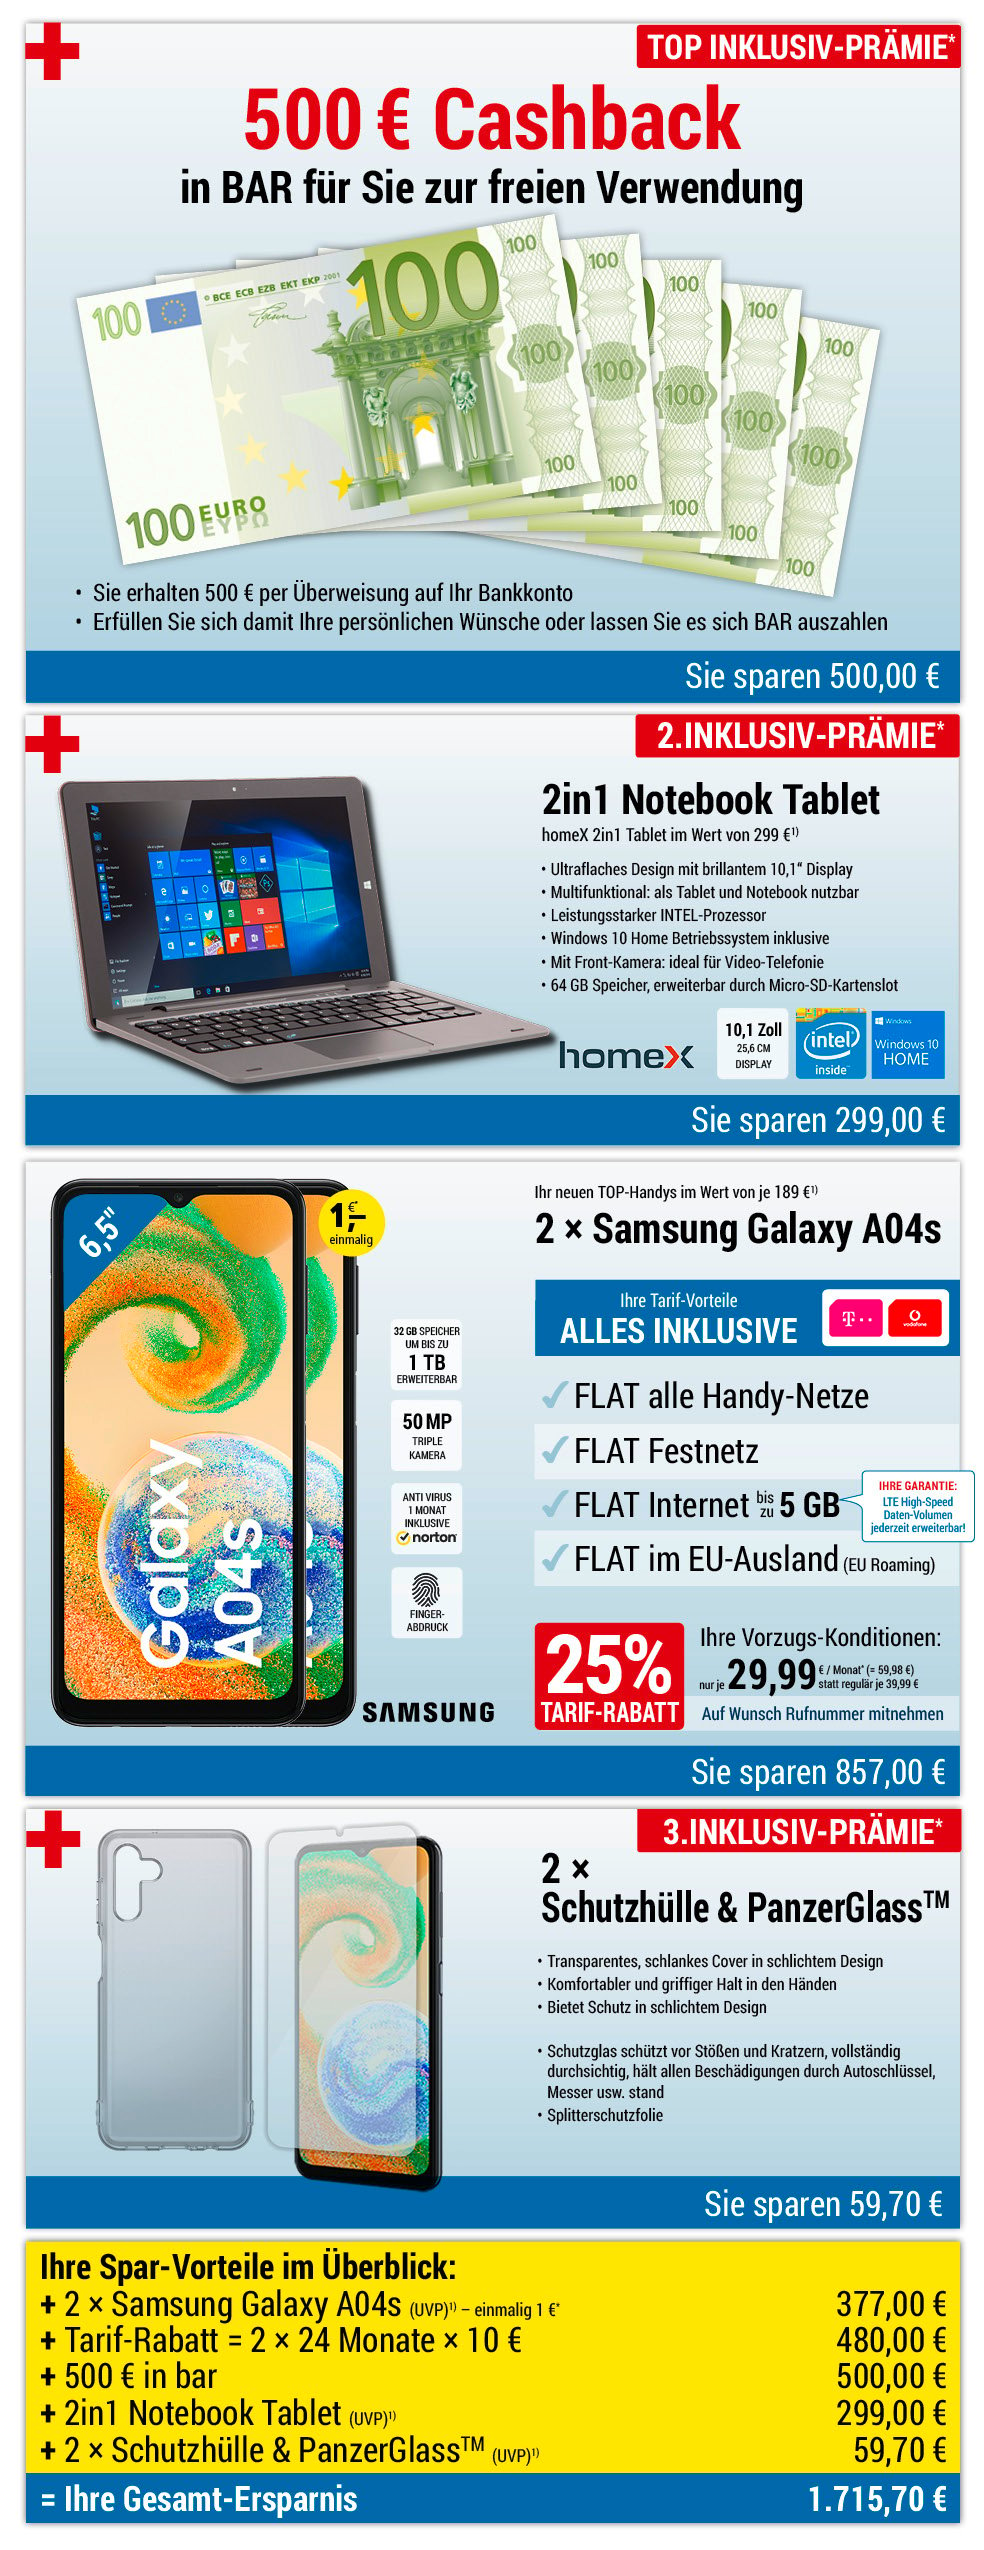 Für nur 1 €*: 2 × Samsung Galaxy A04s + Zubehör + 500 € bar + 2in1 Notebook INKLUSIVE + Handyverträge mit ALL NET FLAT für je 29,99 €/Monat